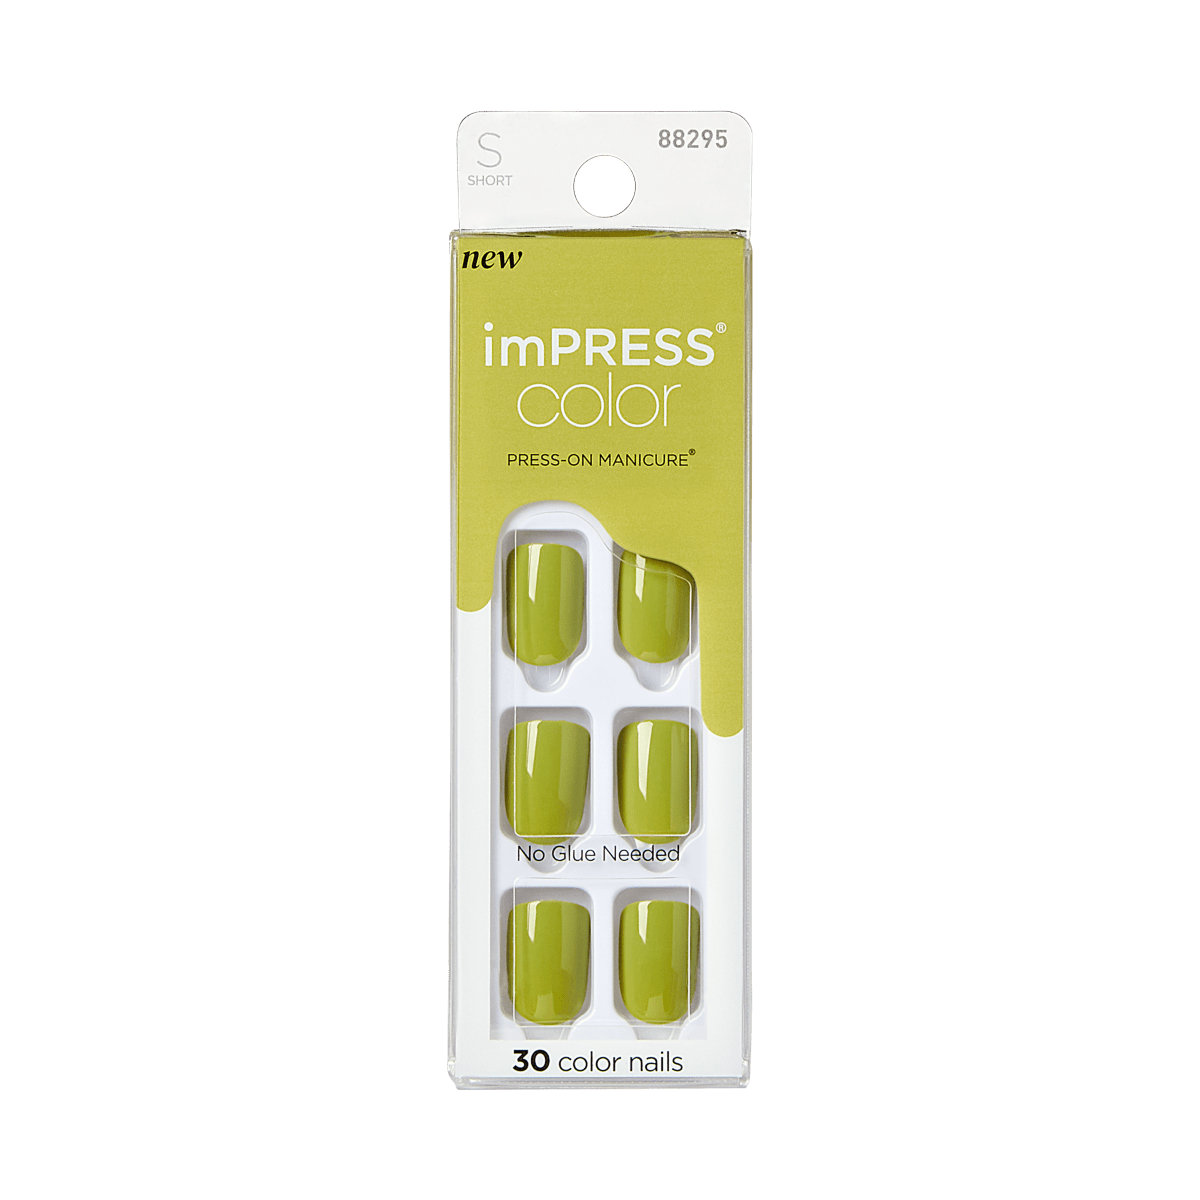 imPRESS Color Press-On Manicure - Green Juice